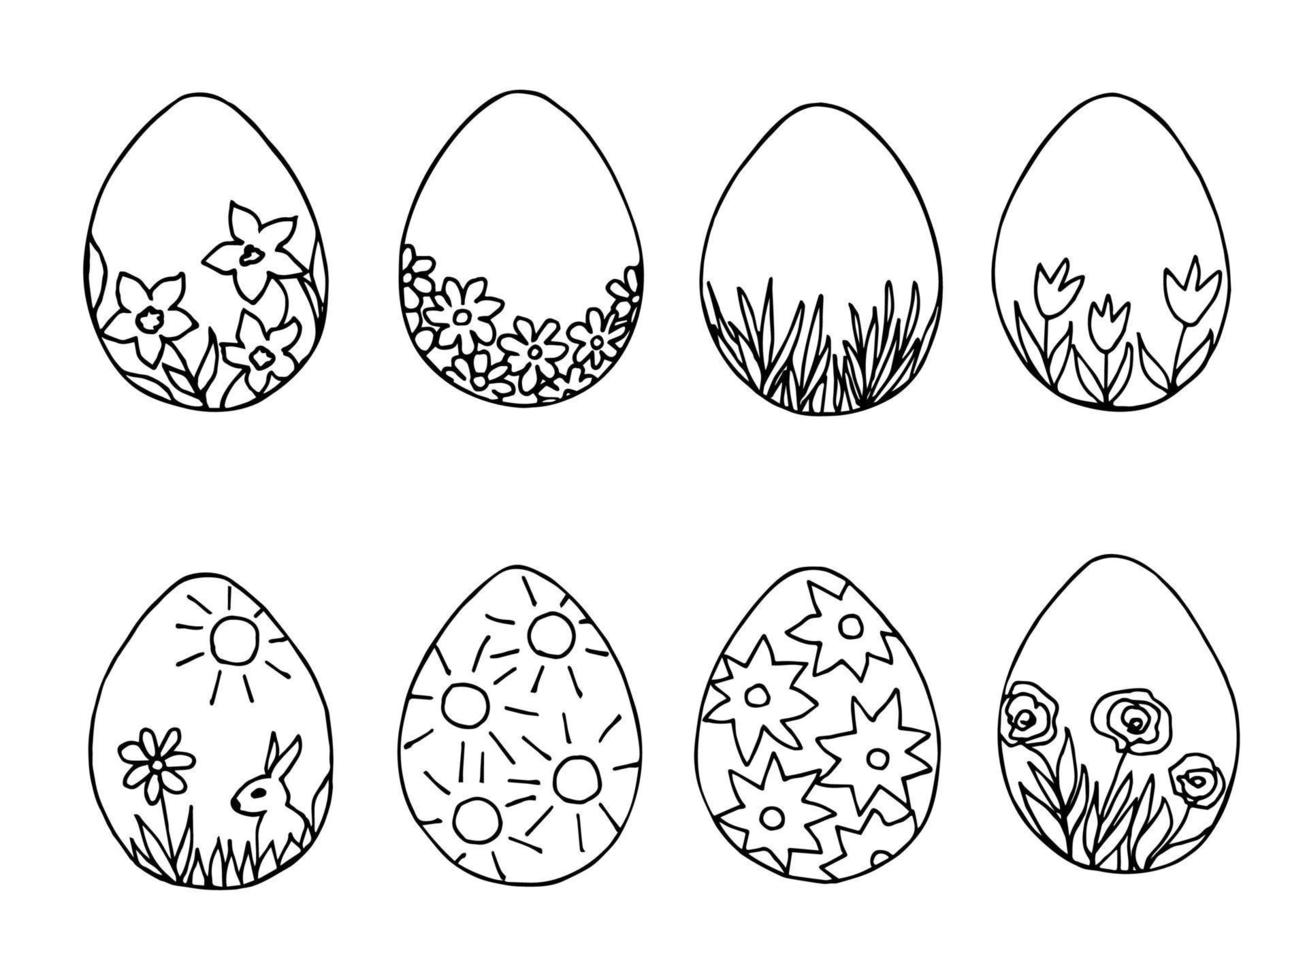 contorno nero disegnato a mano impostato per il design di pasqua. gruppo di uova fantasia su sfondo bianco. celebrazione della domenica santa, l'arredamento di cartoline, adesivi vettore